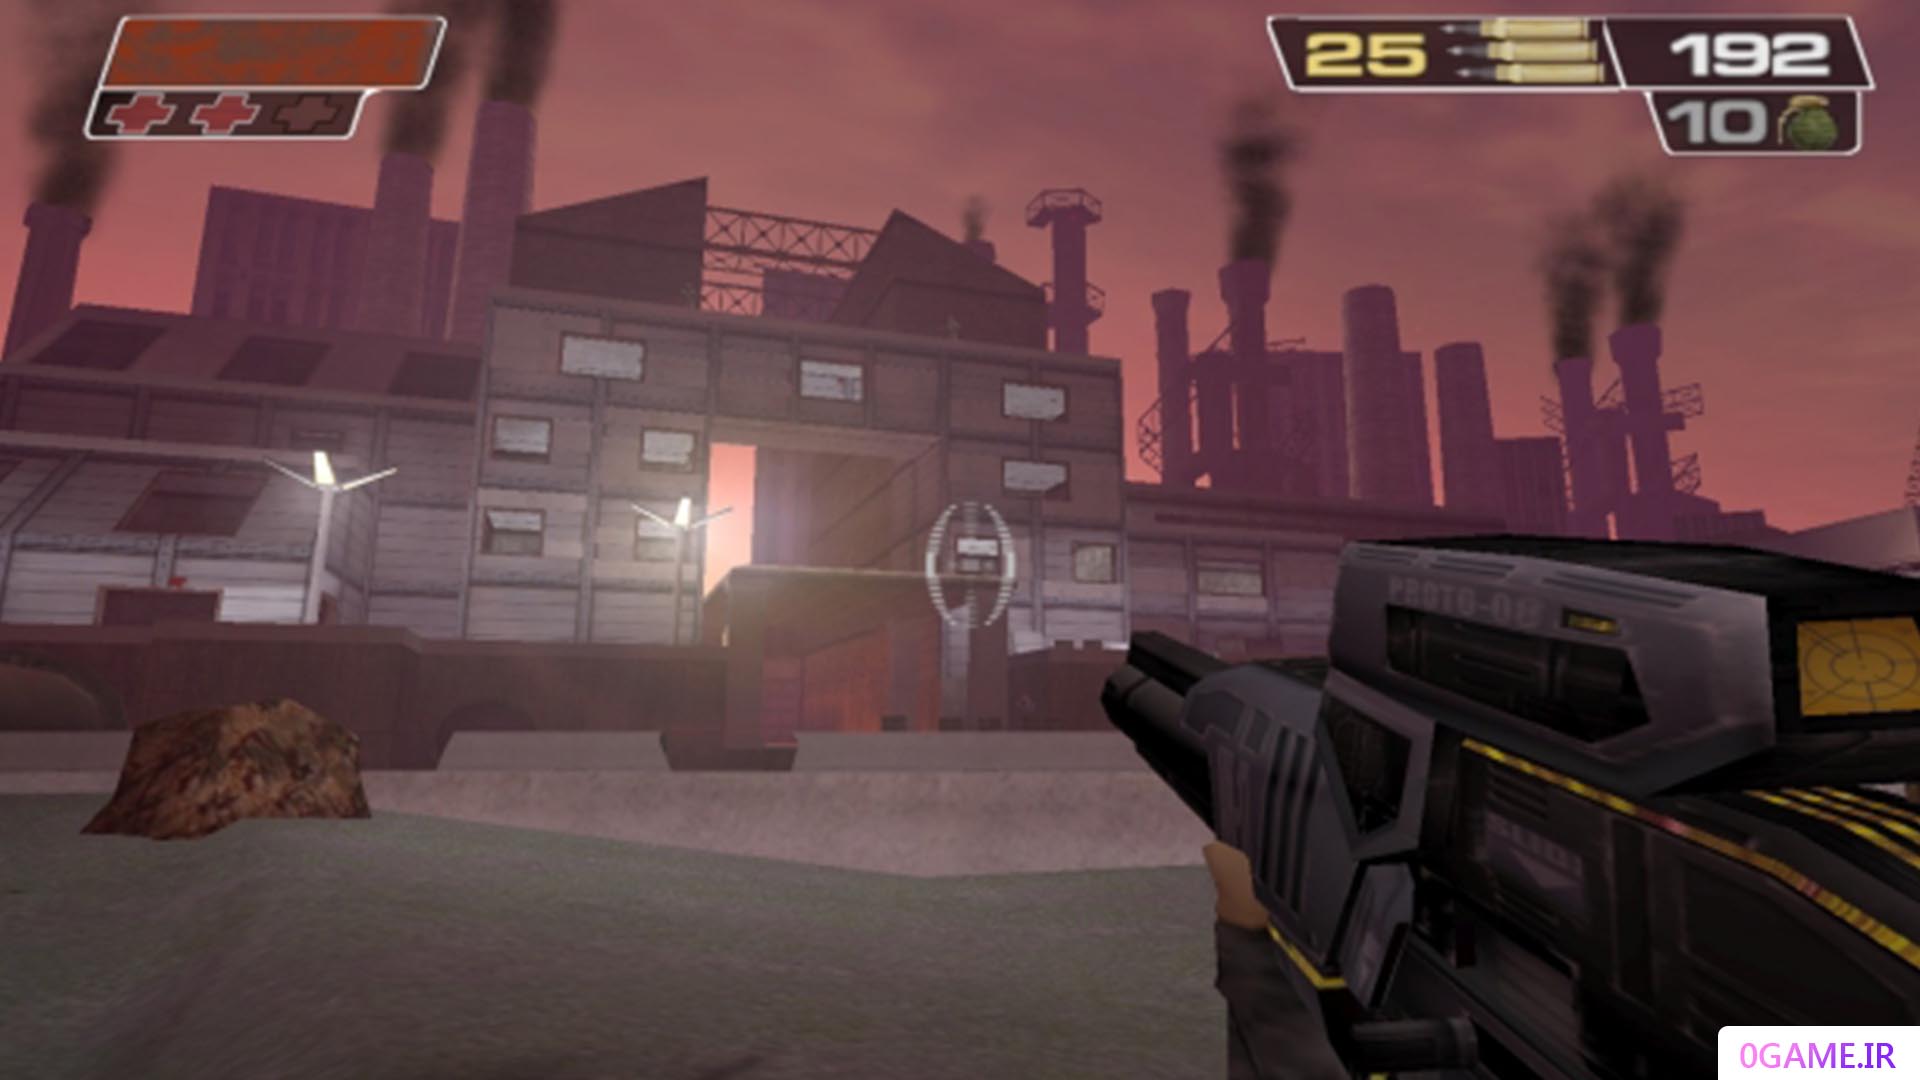 دانلود بازی جناح قرمز 2 (Red Faction II) نسخه کامل برای کامپیوتر